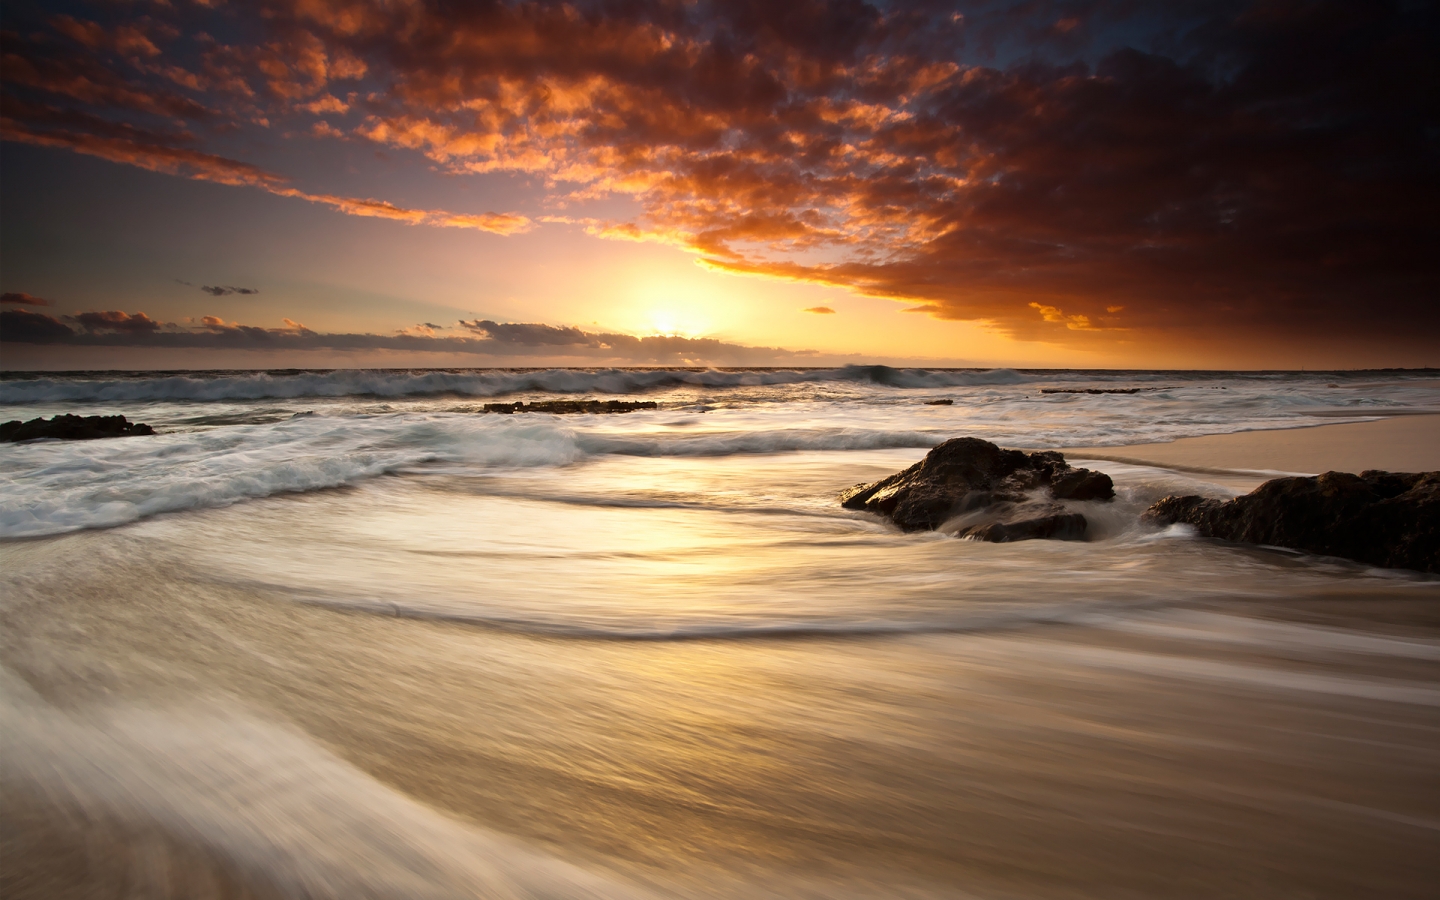 Beautiful Sunset Light for 1440 x 900 widescreen resolution